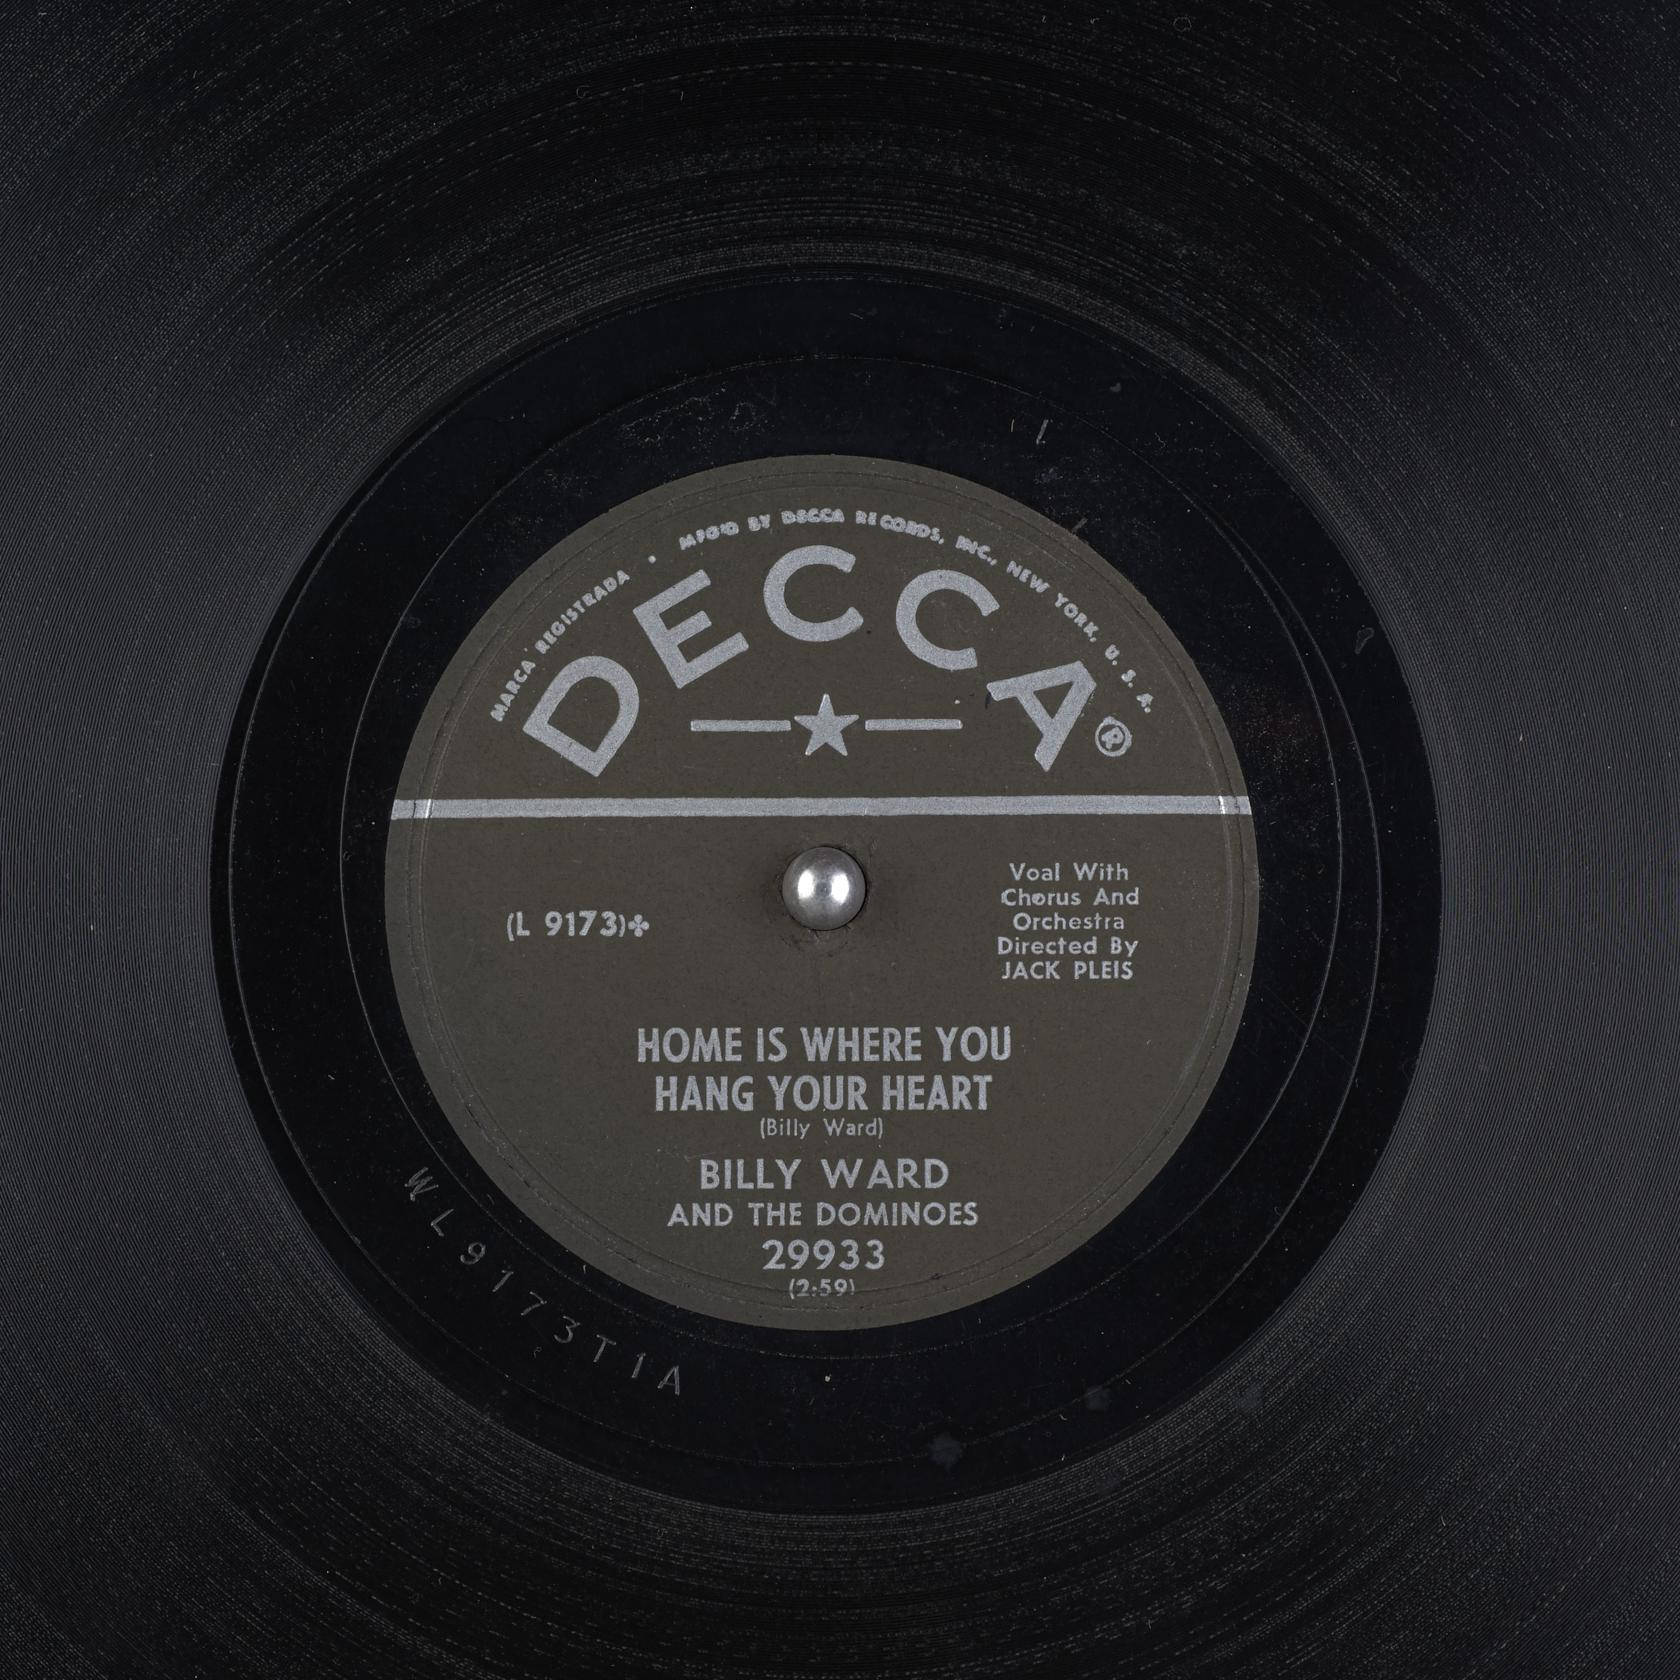 Billyward Und Die Dominoes Auf Decca Vinyl-schallplatten Wallpaper